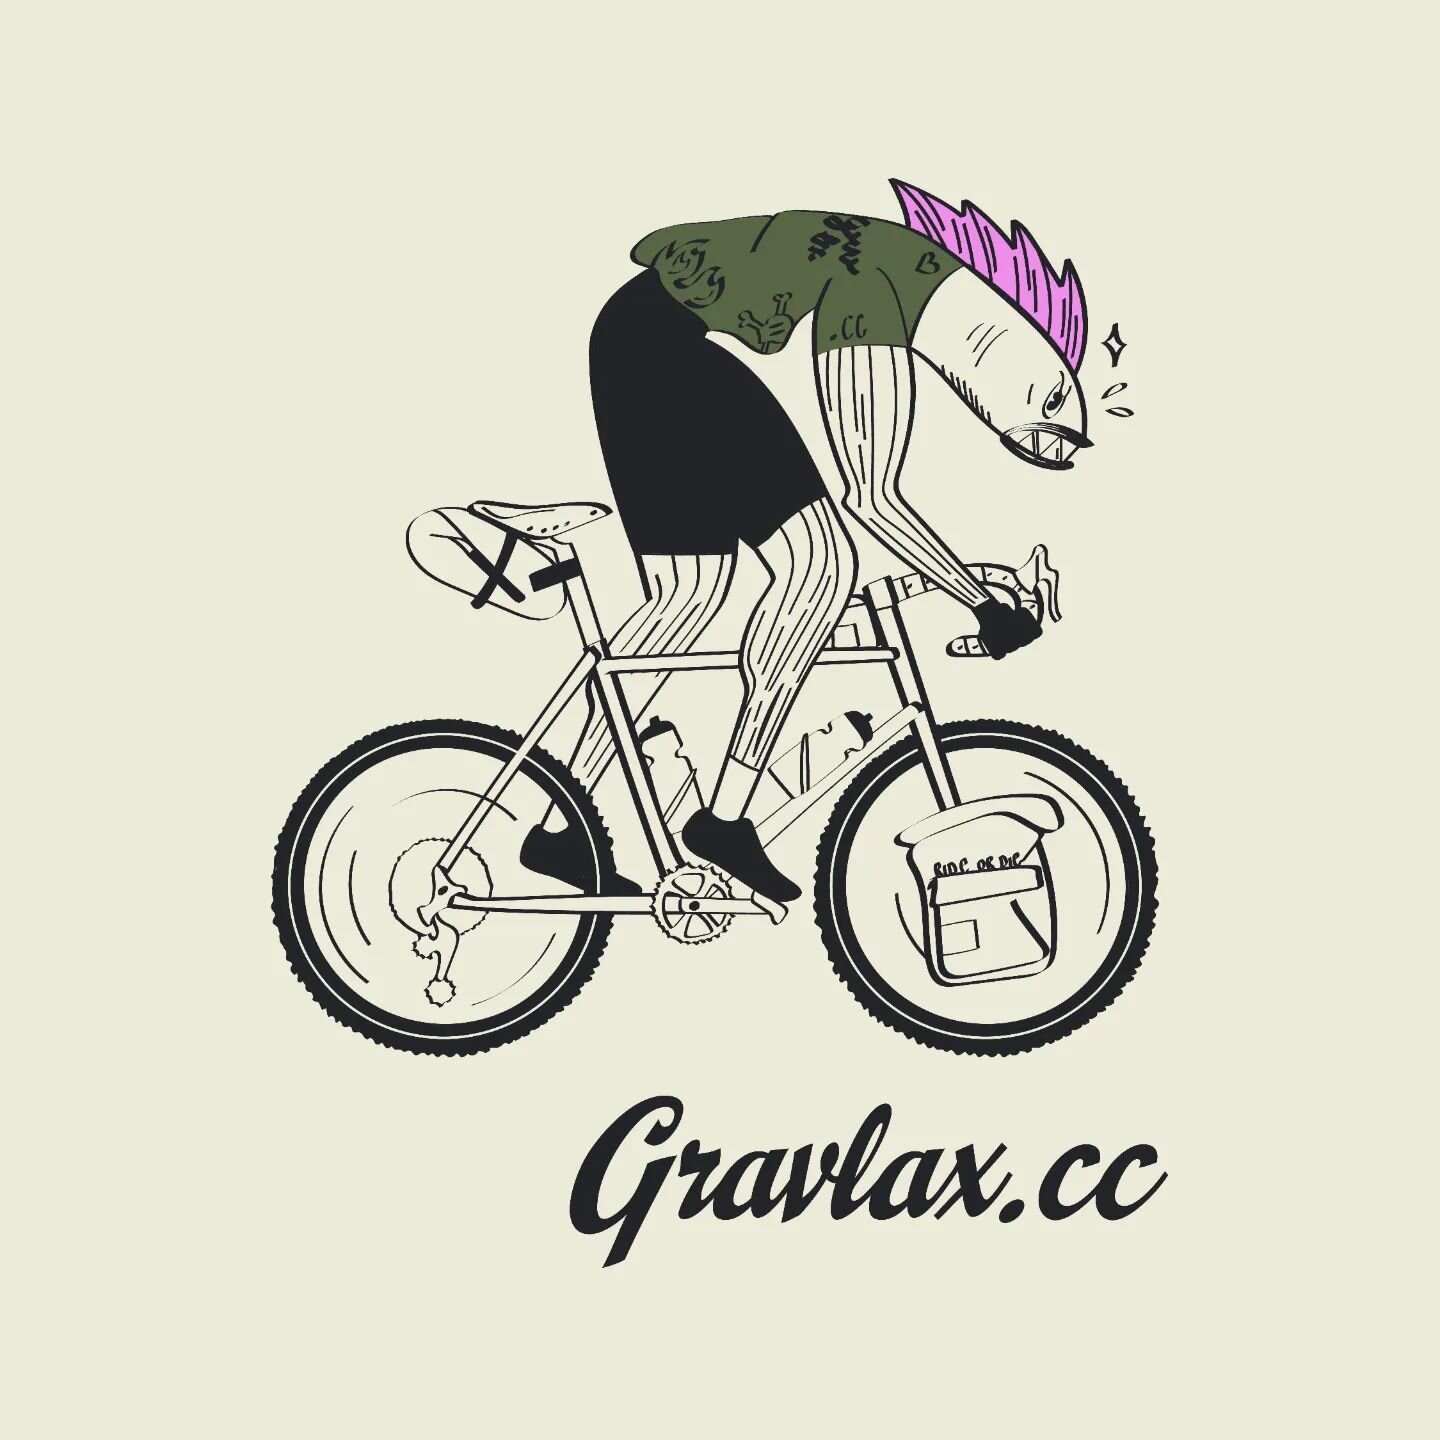 Identit&eacute; pour GRAVLAX.CC 🚲

@gravlax.cc - &agrave; contre-courant

Les rides gravel bucoliques &agrave; Lyon et en Navarre c'est tous les mercredi avec @bikes_moussonerie.

#identitevisuelle #logo #gravelbike #lyon